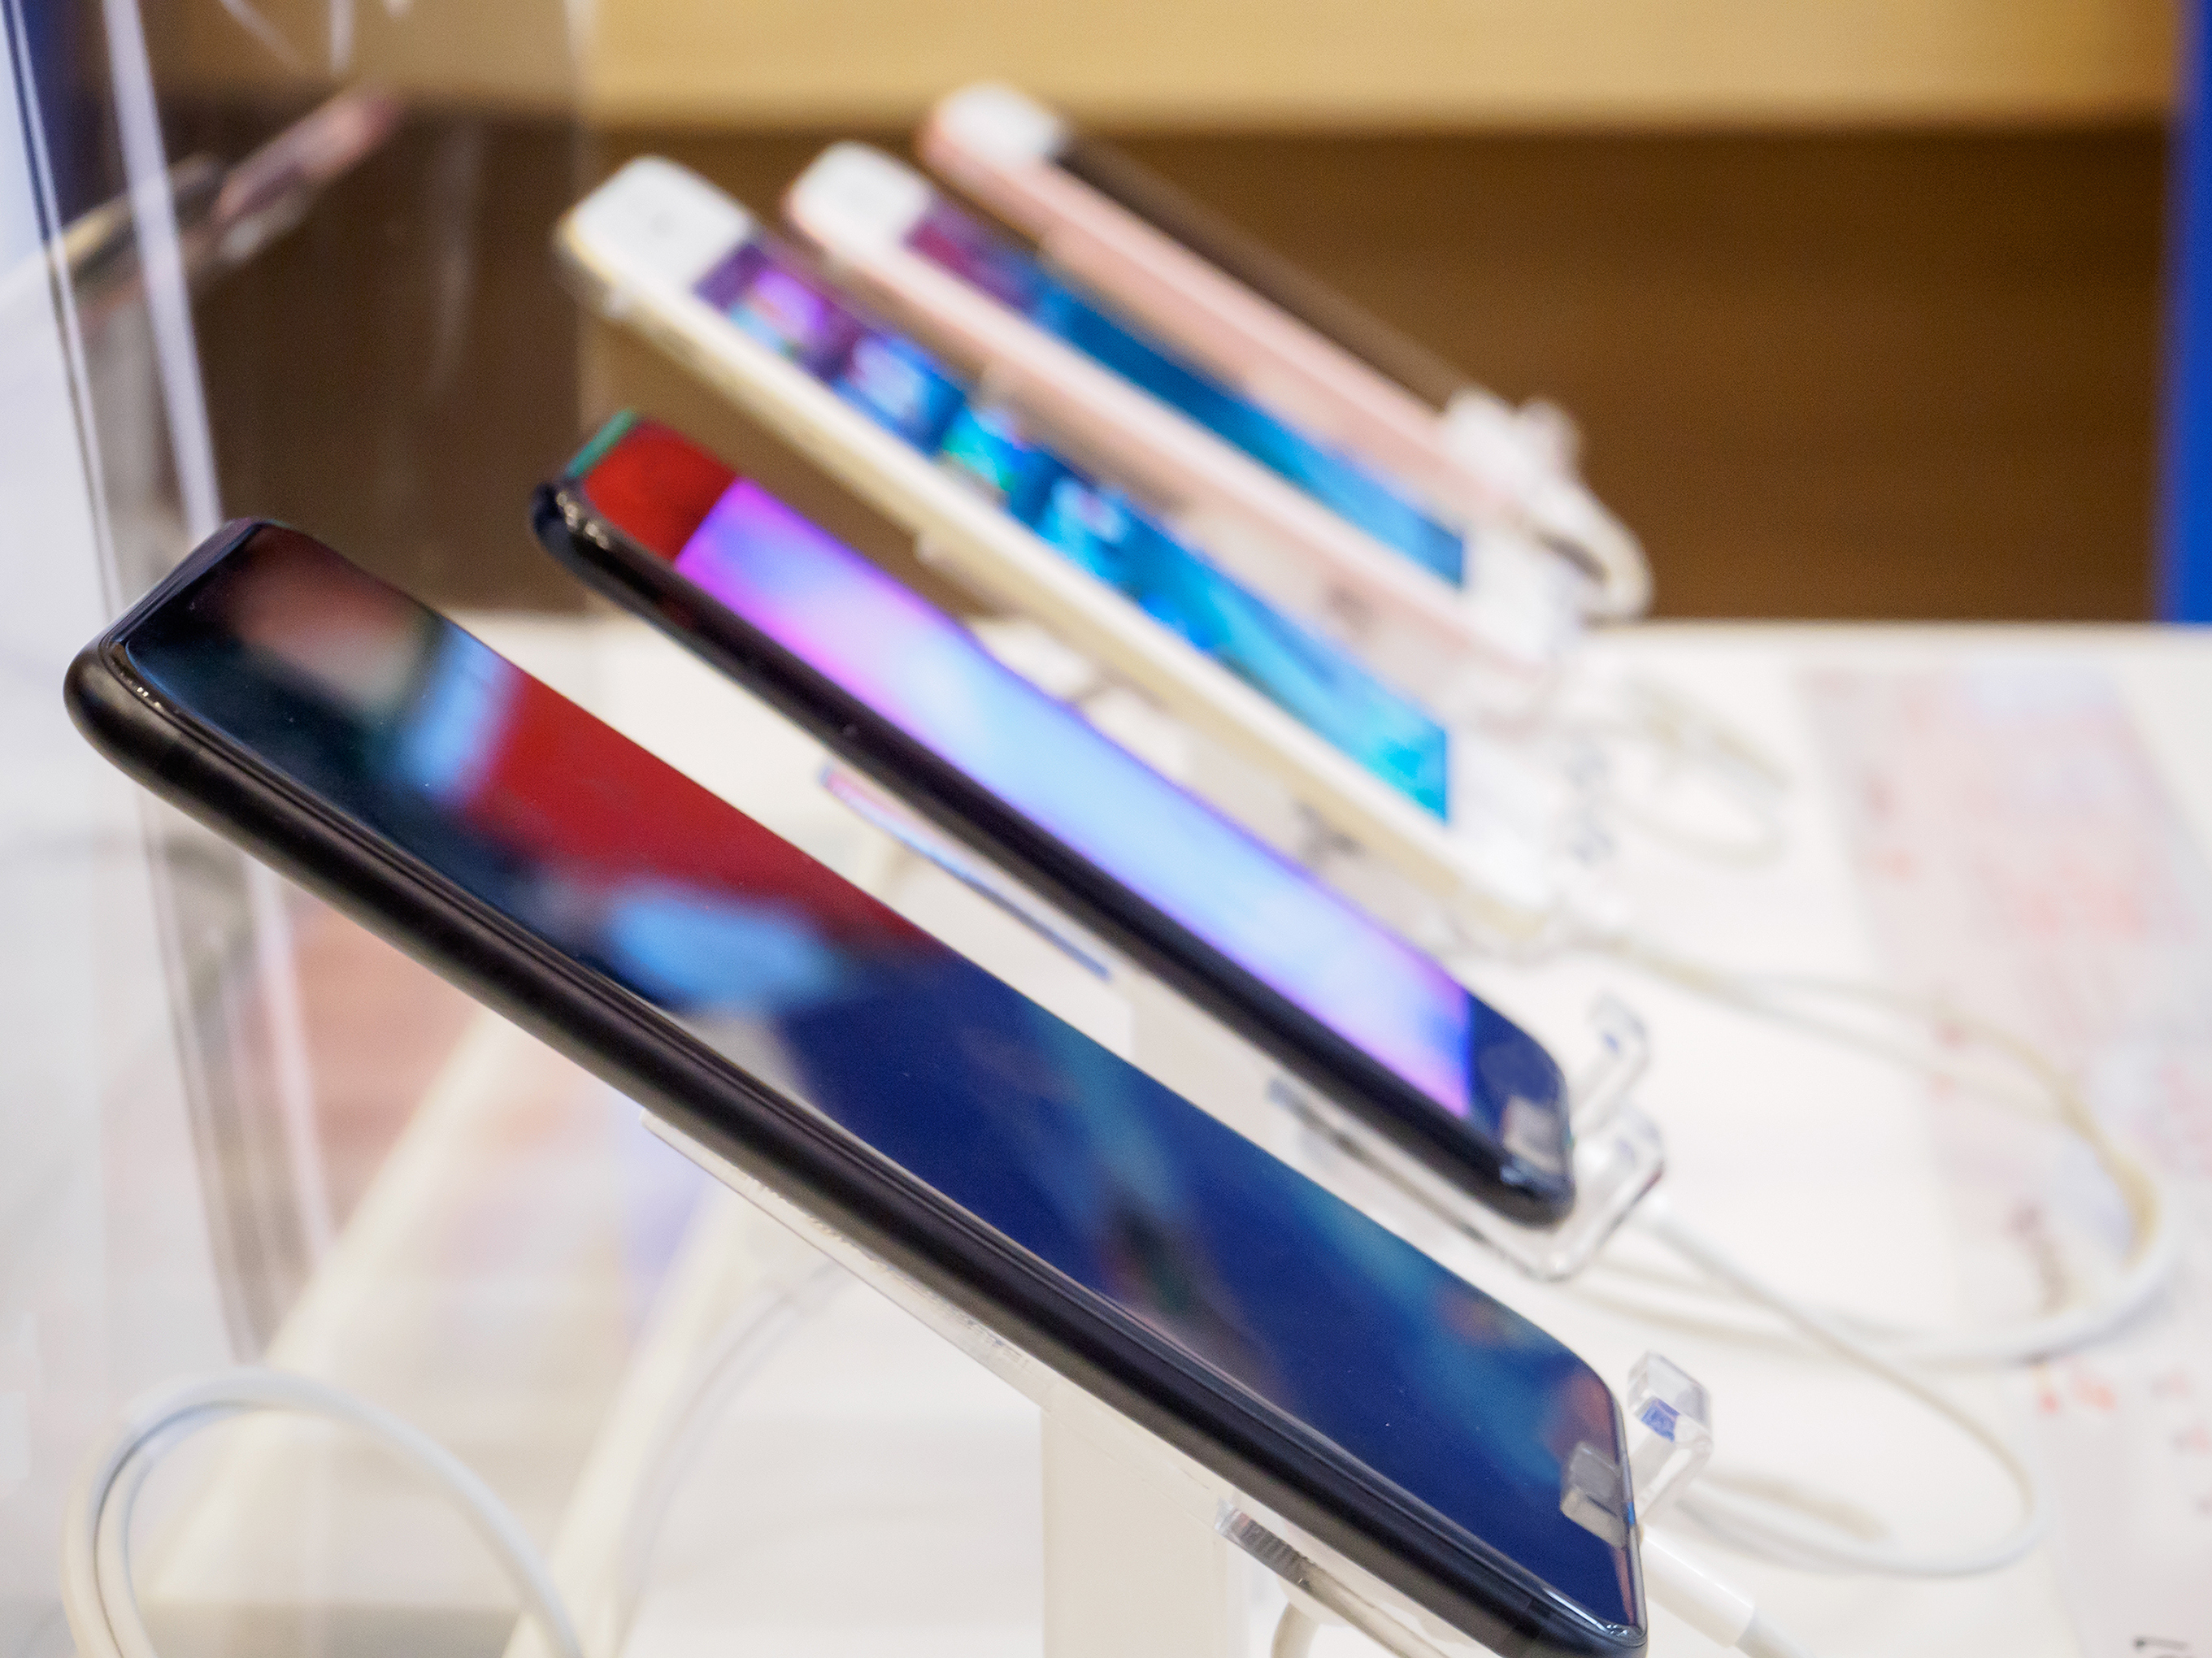 Apple dépasse Samsung pour la première fois en termes de livraisons mondiales de smartphones